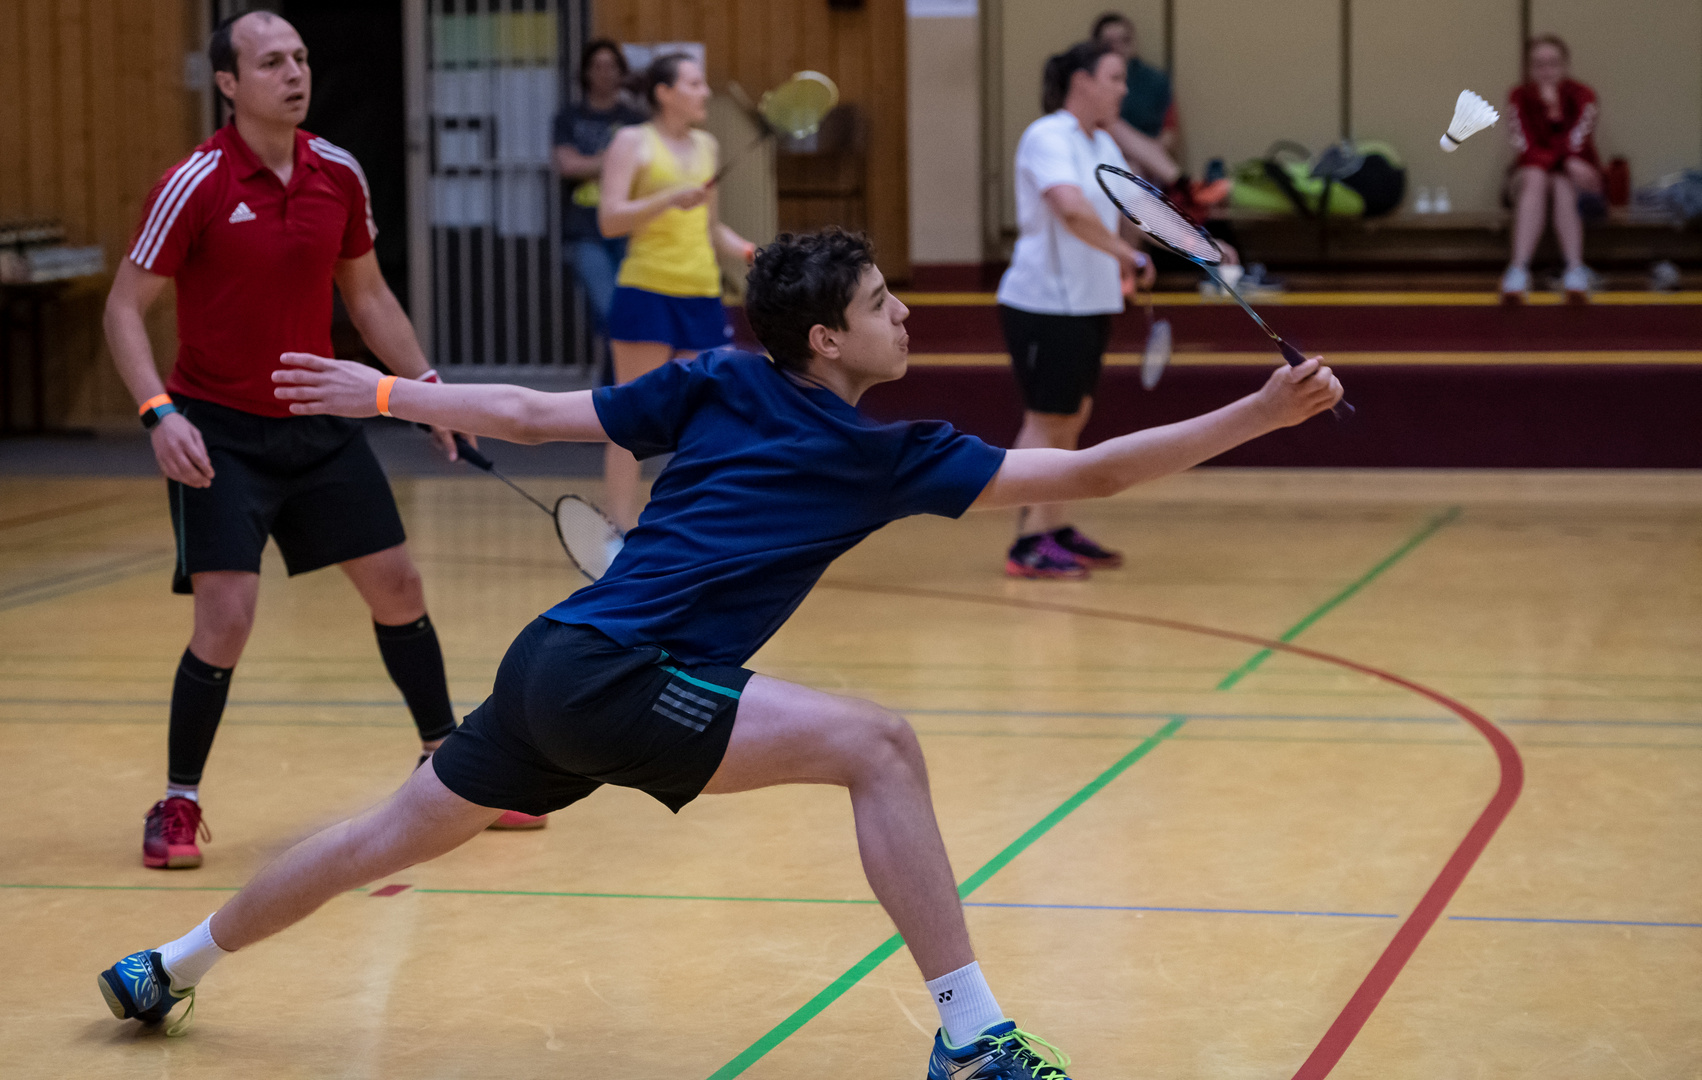 Badminton in Zirndorf beim Bibertpokal 2021